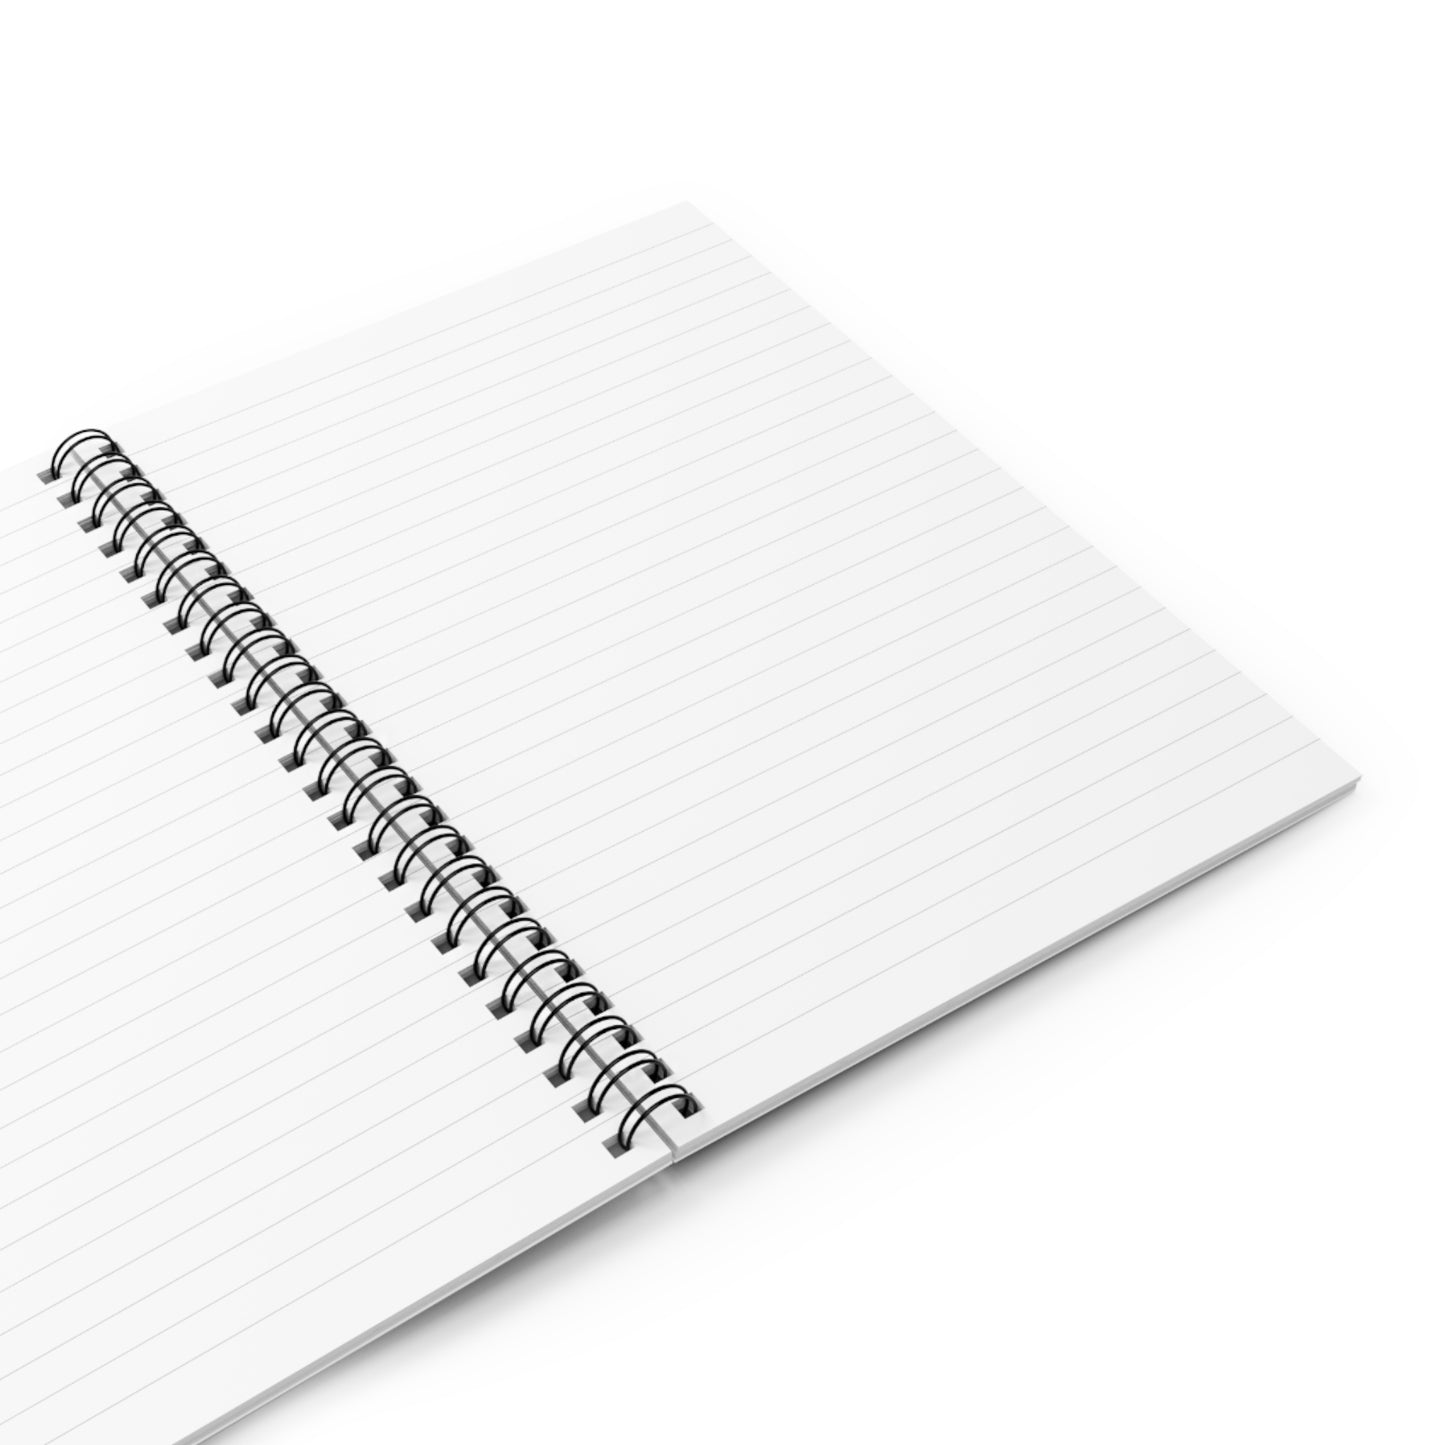 Dream Journal, Dream Notebook, Spiral Notebook, Ruled Line